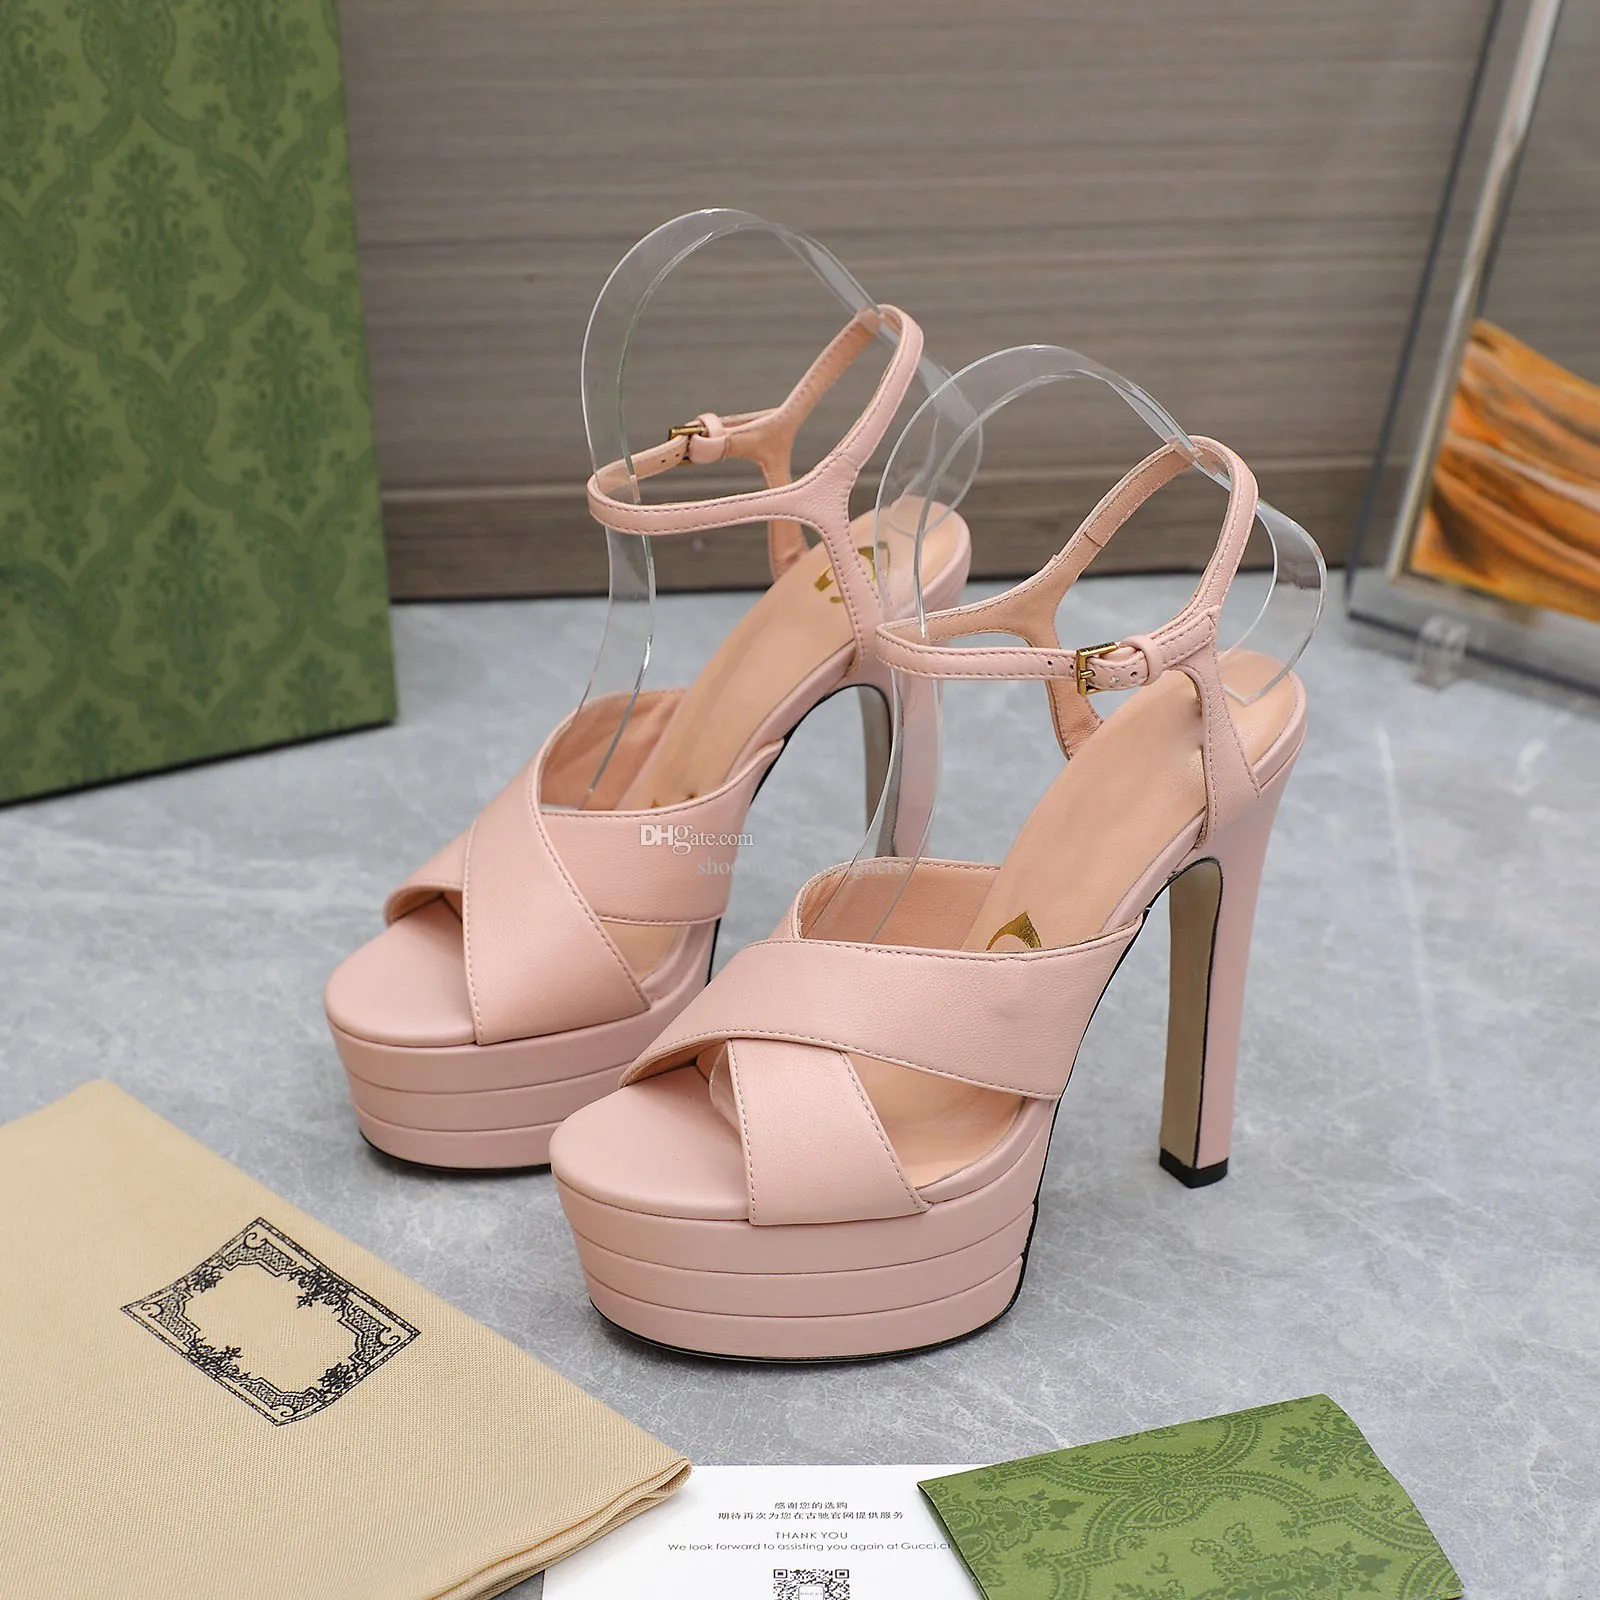 New Angel Sandals Plate-forme escarpins talons blocs épais Bretelles croisées orteil créateurs de luxe pour femmes semelle en cuir chaussures de soirée chaussures d'usine Taille 35-42